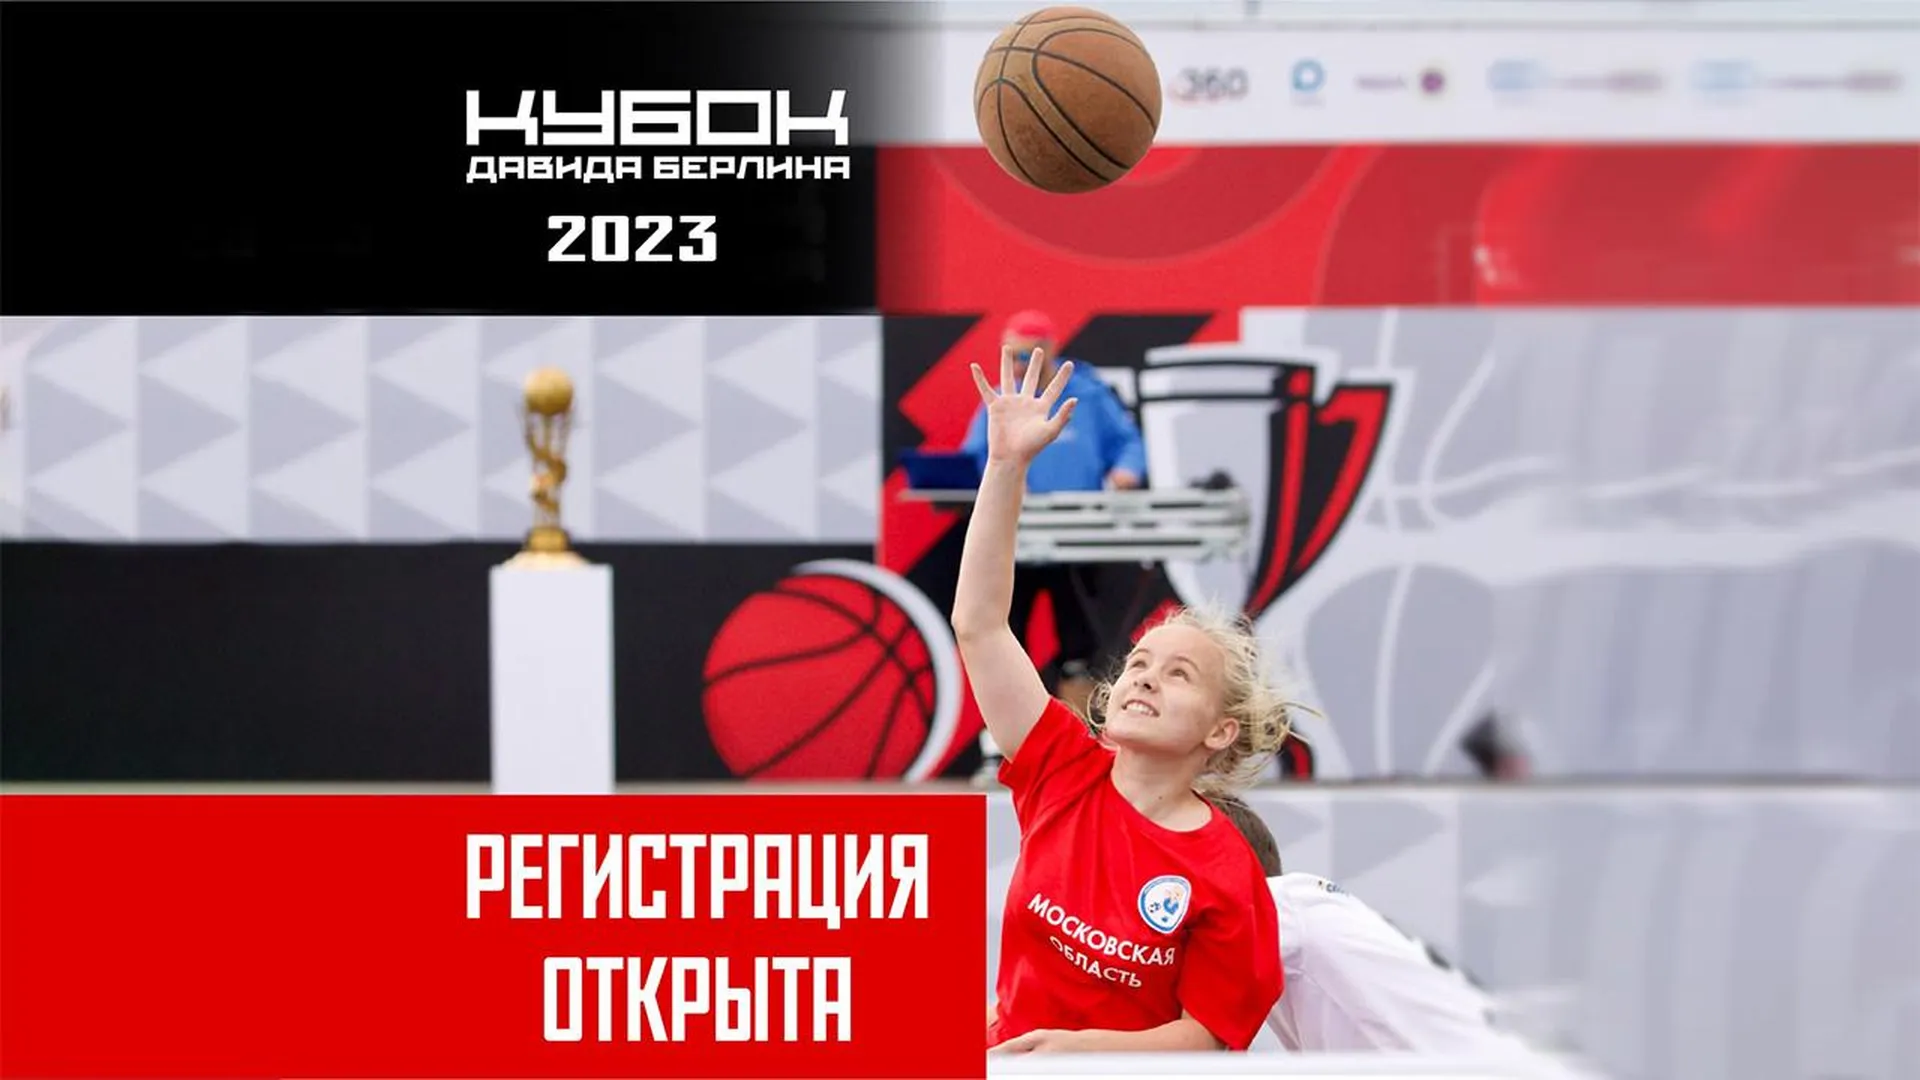 В Подмосковье началась регистрация участников «Кубка Давида Берлина» по уличному баскетболу